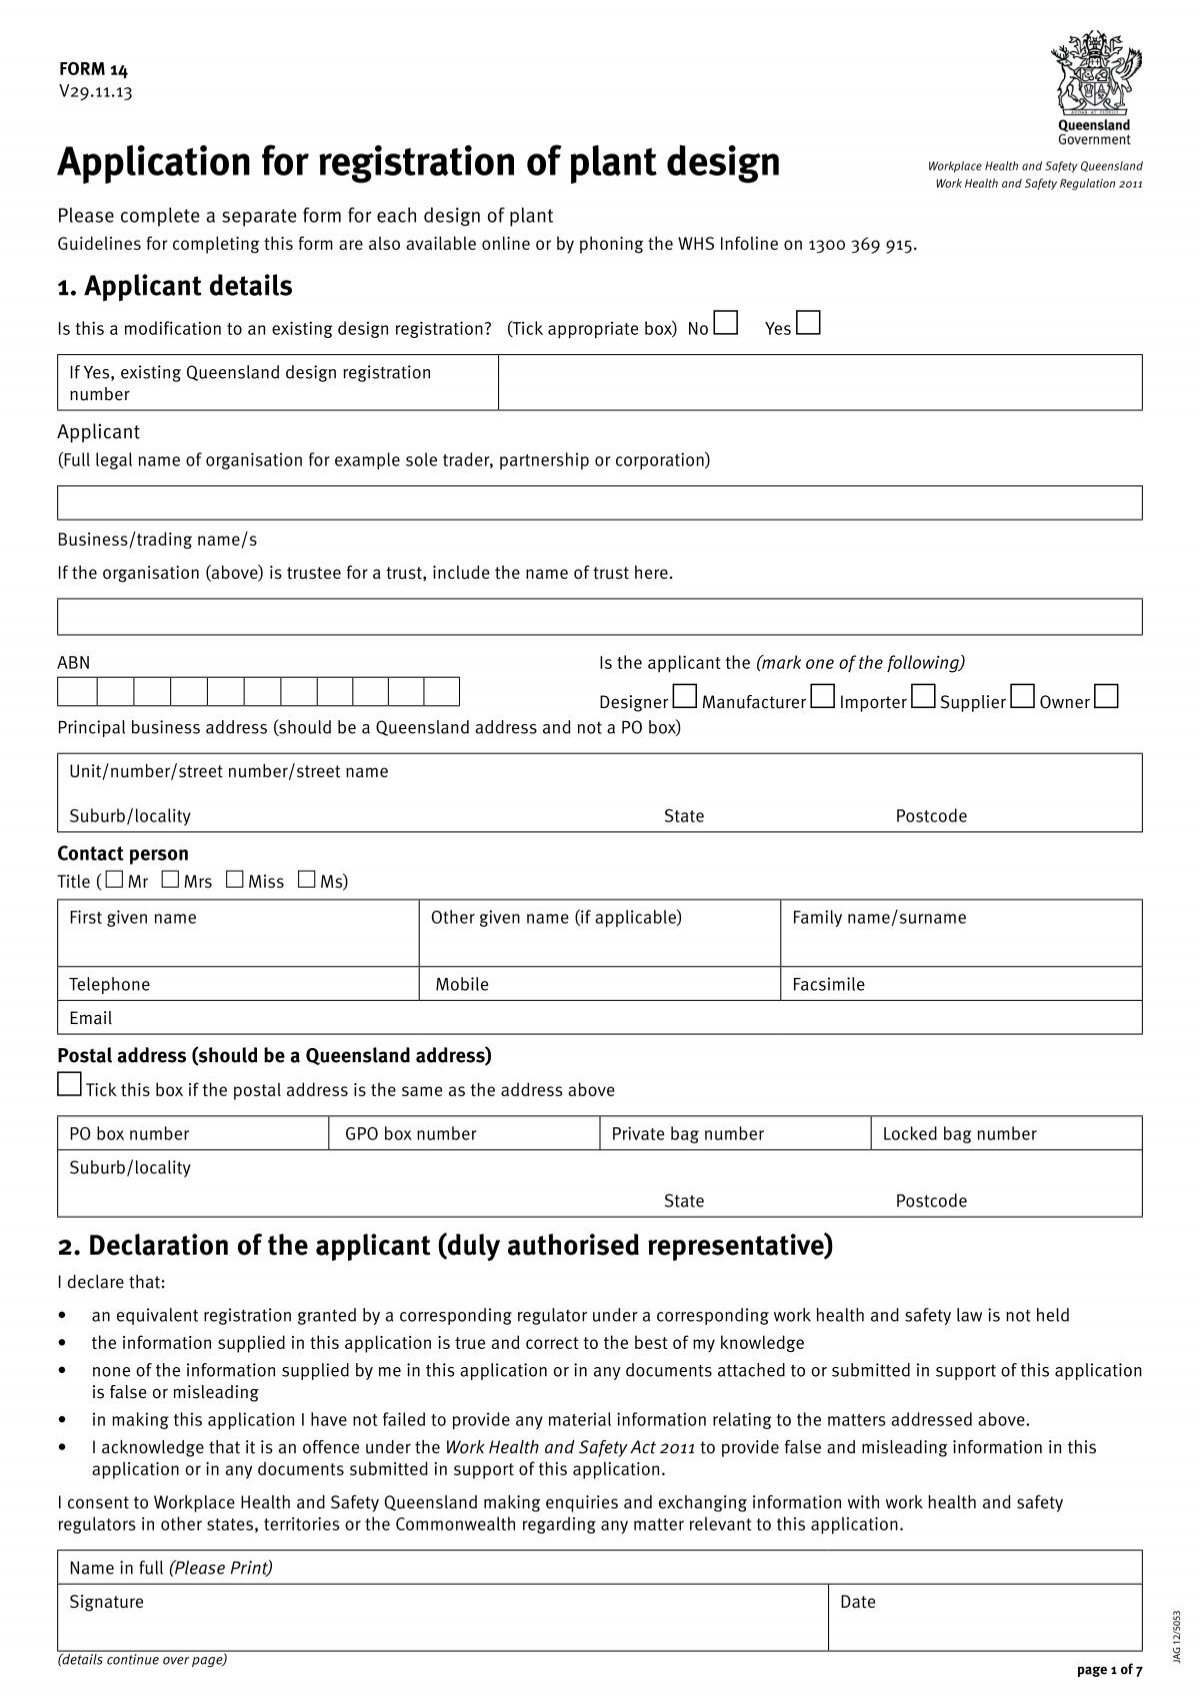 Form 14 - Application for registration of plant design (PDF, 75 kB)